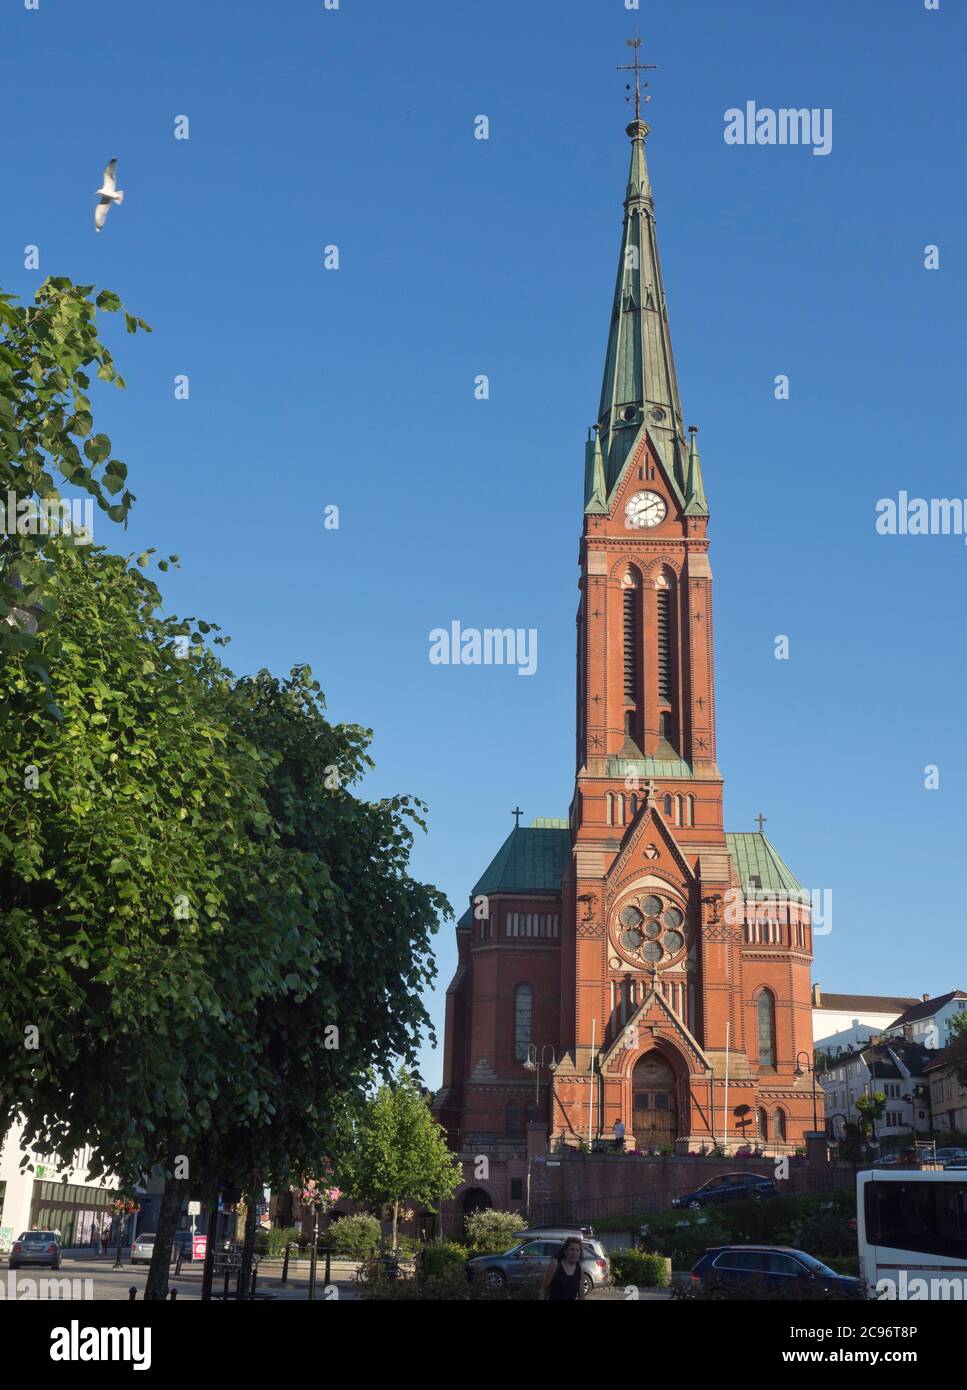 Église de la Trinité en Norvège Arendal, bâtiment en brique rouge de style néo-gothique au centre de la ville. Banque D'Images